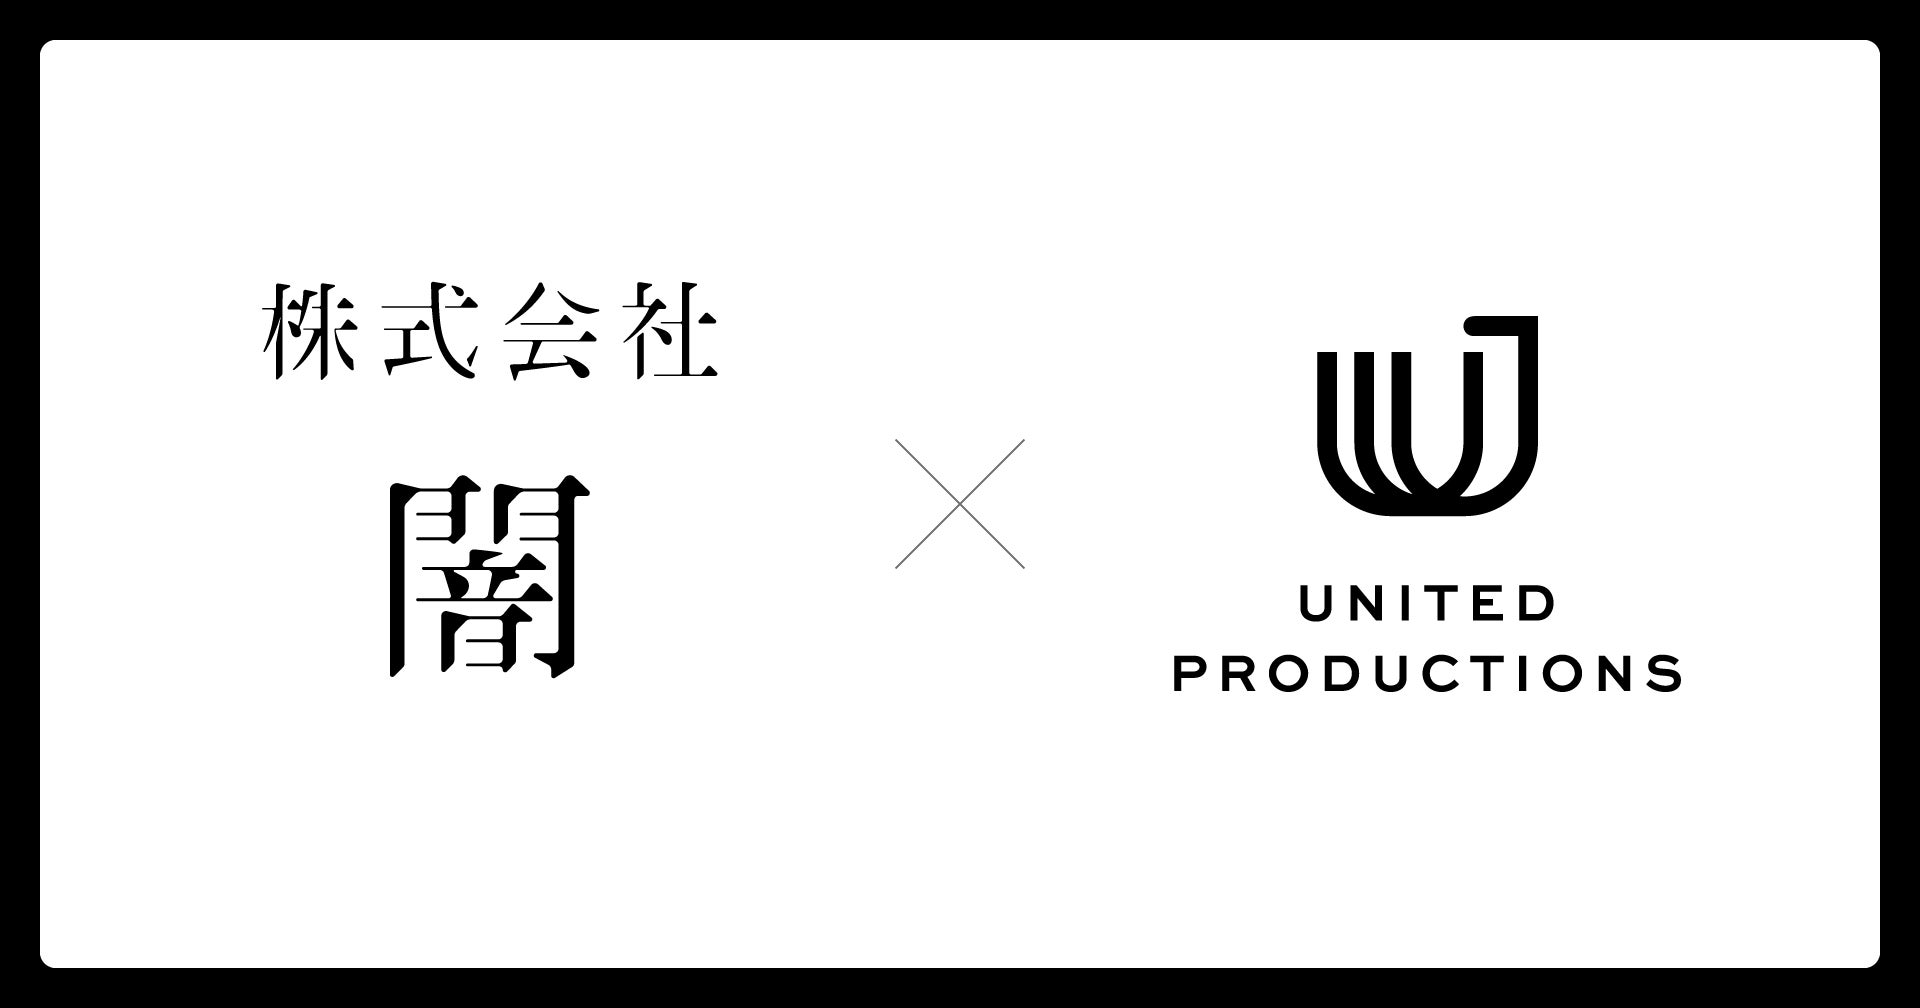 「日本発のホラーエンタメを世界へ！」株式会社闇と株式会社UNITED PRODUCTIONSがオリジナルのホラーIP創出を目指し、資本業務提携契約を締結